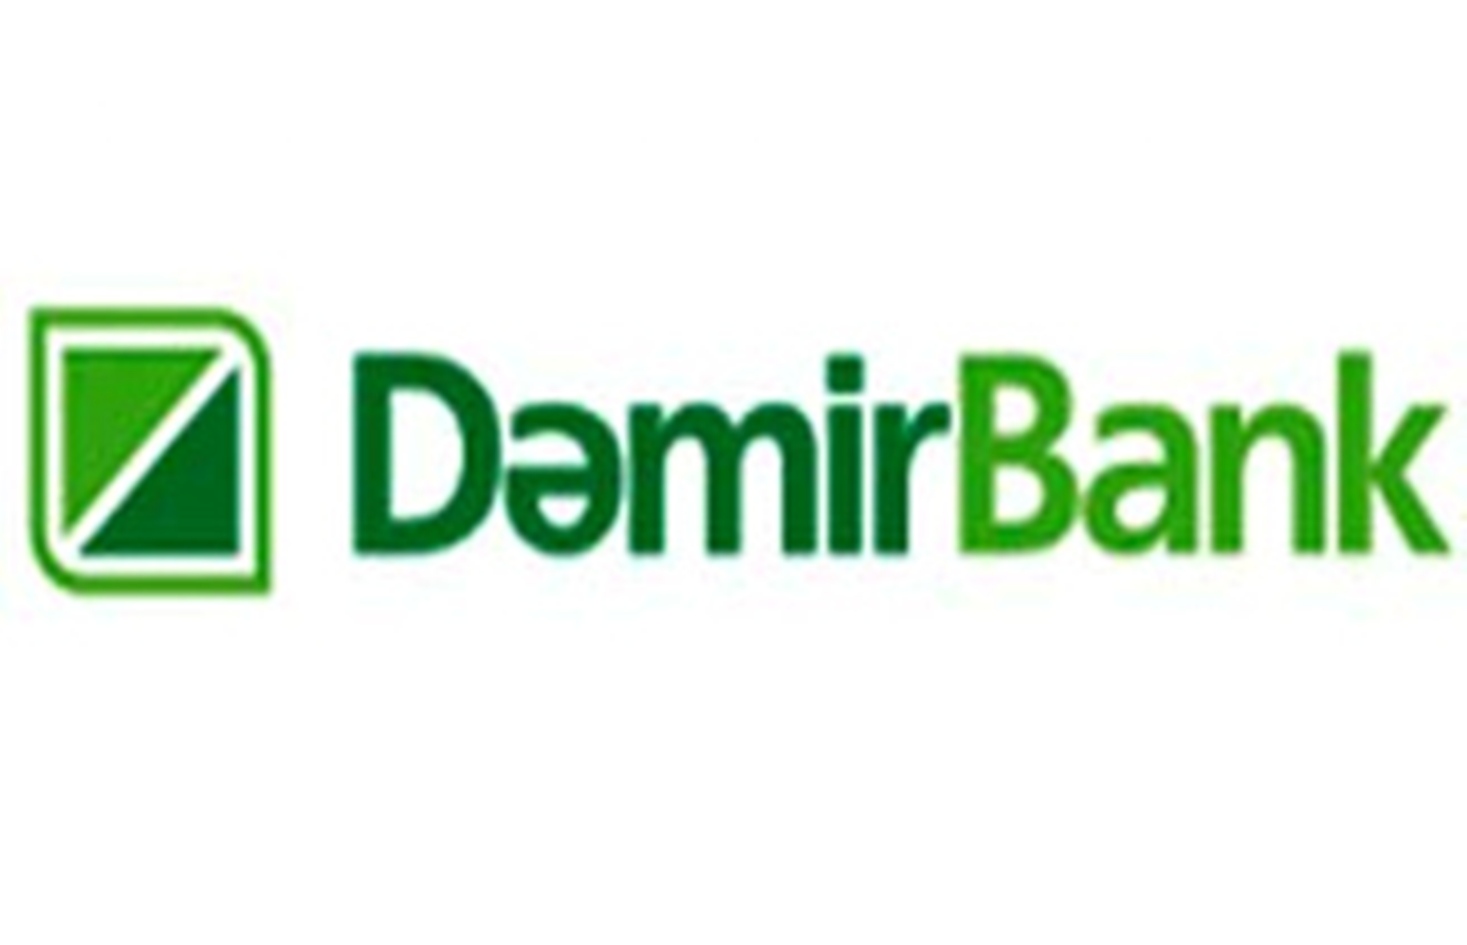 DemirBank проводит выигрышную кампанию для клиентов по оплатам услуг связи, коммунальных и прочих на сайте